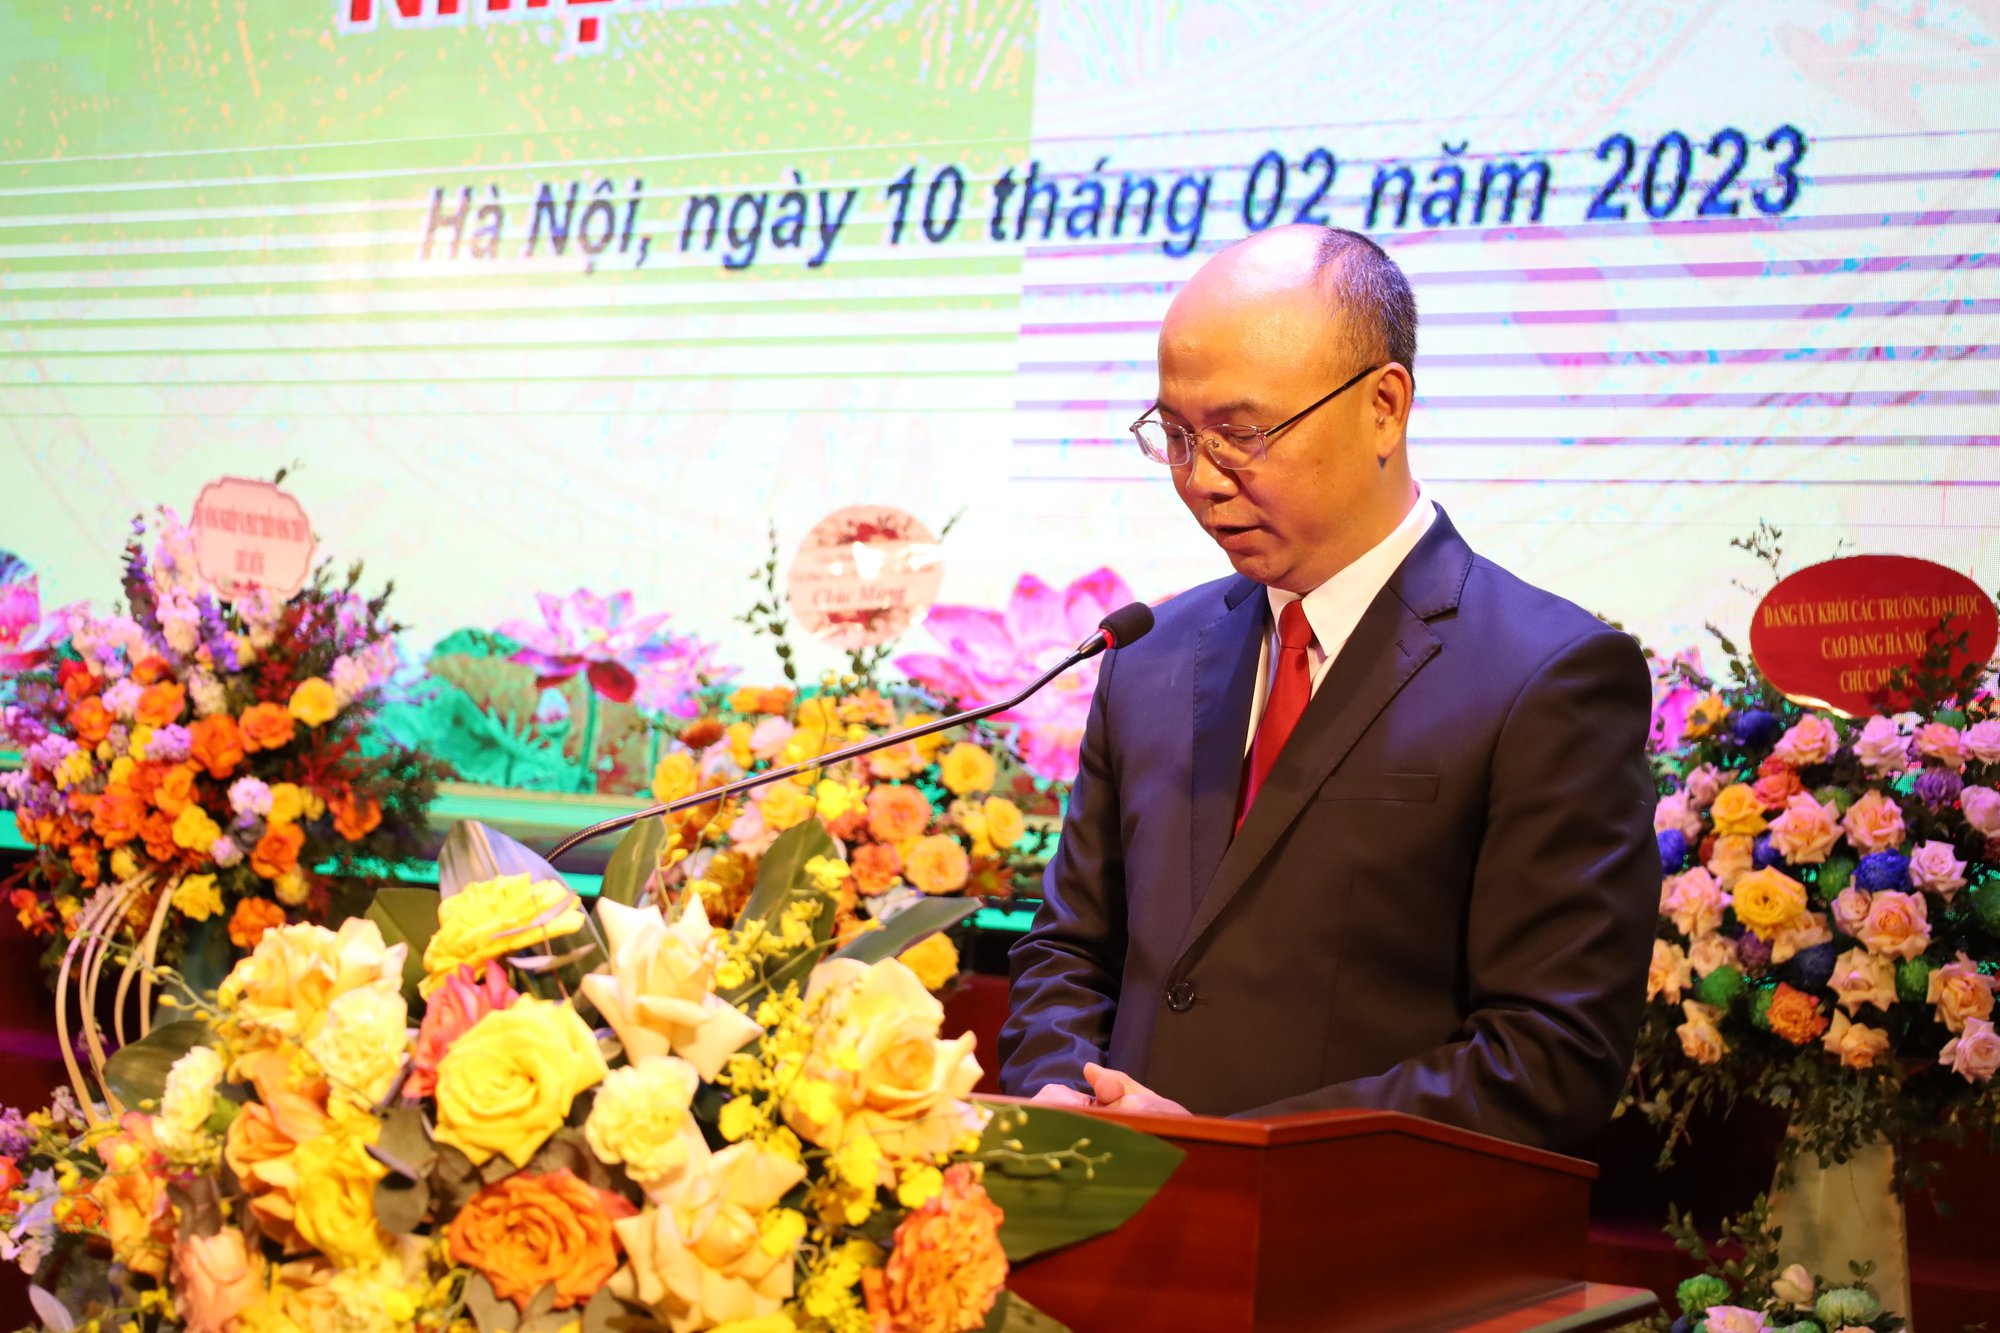 PGS Nguyễn Hữu Huế được bổ nhiệm làm Chủ tịch Hội đồng Trường Đại học Thủy lợi khoá IV, nhiệm kỳ 2020-2025 - Ảnh 3.